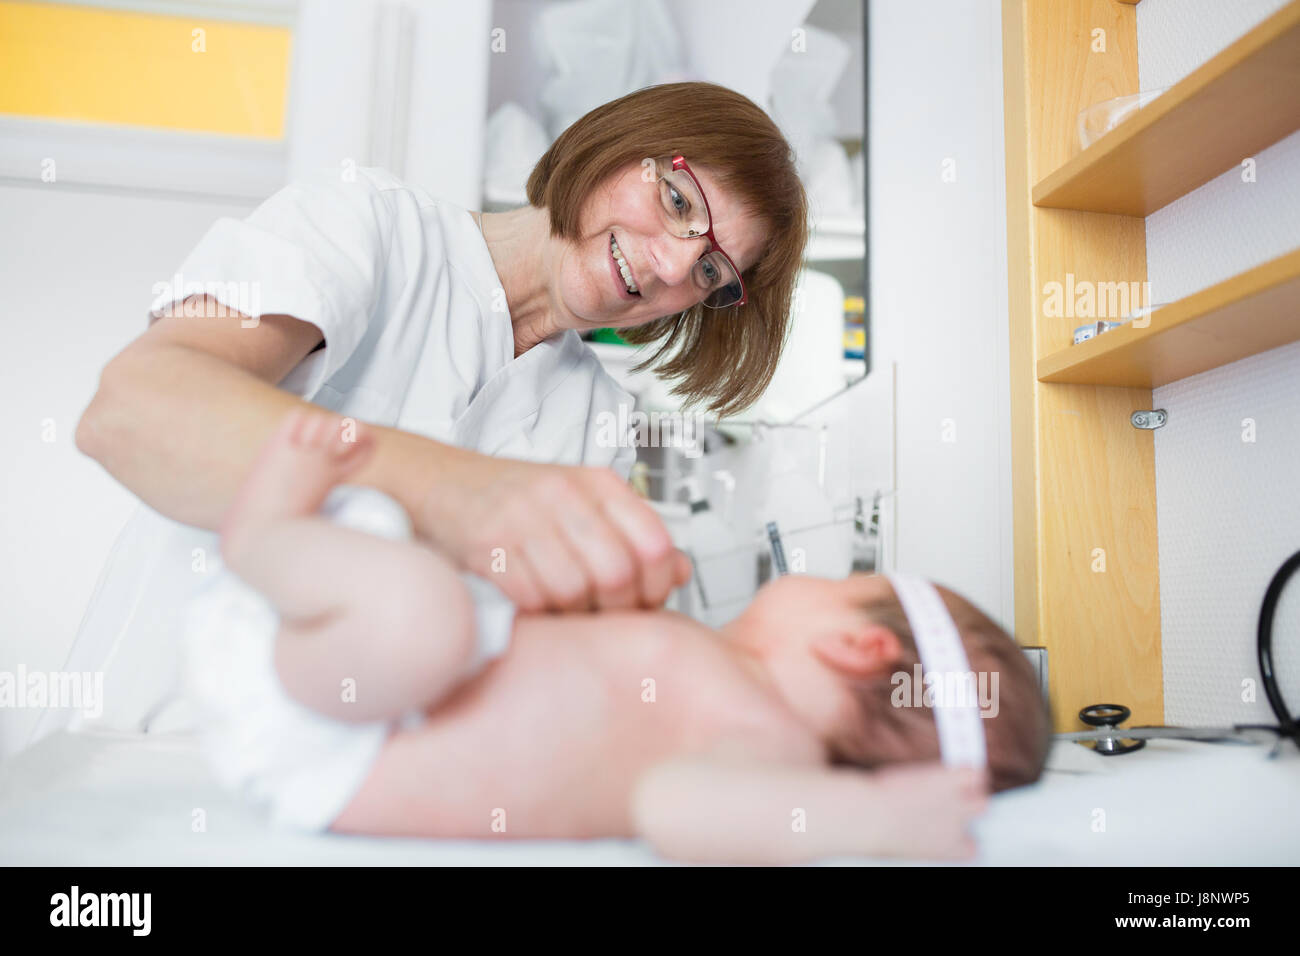 Bebé (0-1 meses) que está siendo examinado por la enfermera Foto de stock